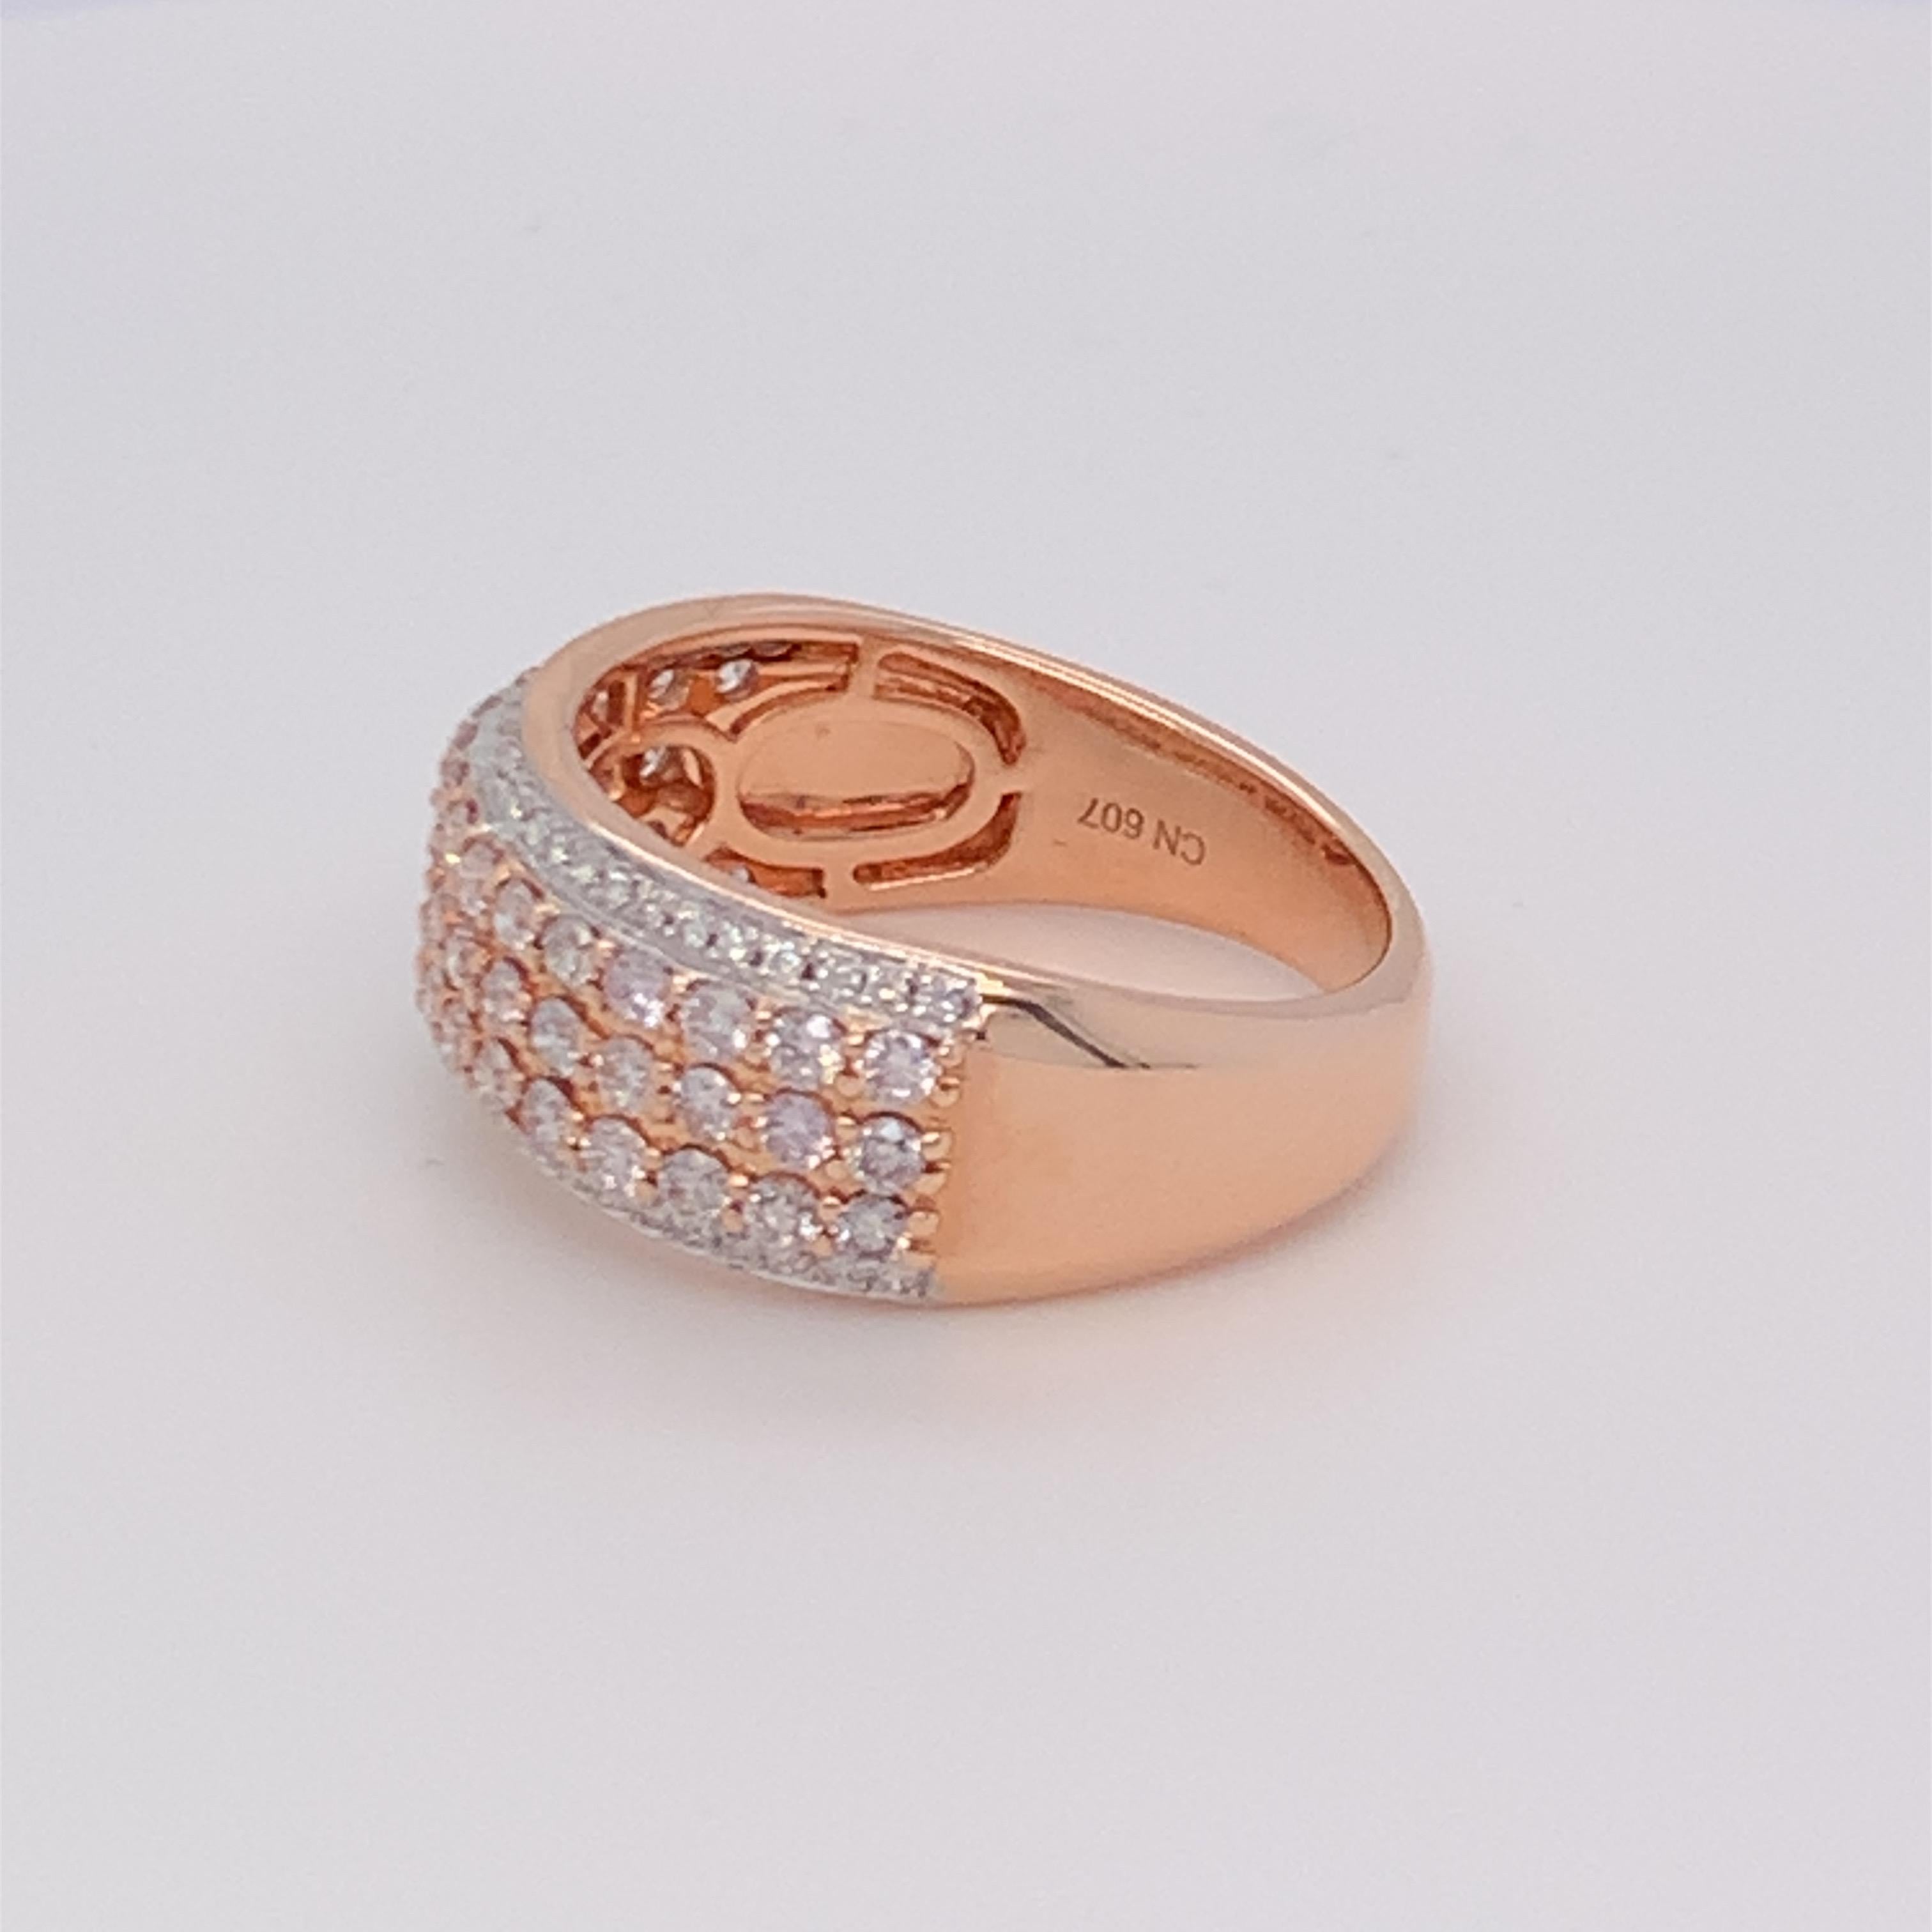 Dieser schöne fünfreihige Diamantring hat eine Kombination aus rosa Band zwischen zwei Reihen weißer Diamanten. Sorgfältig mit der Hand von qualifizierten Handwerkern fertiggestellt und in 14K zwei Ton Gold montiert.  
Rosa Diamant: 0,80ct
Weißer